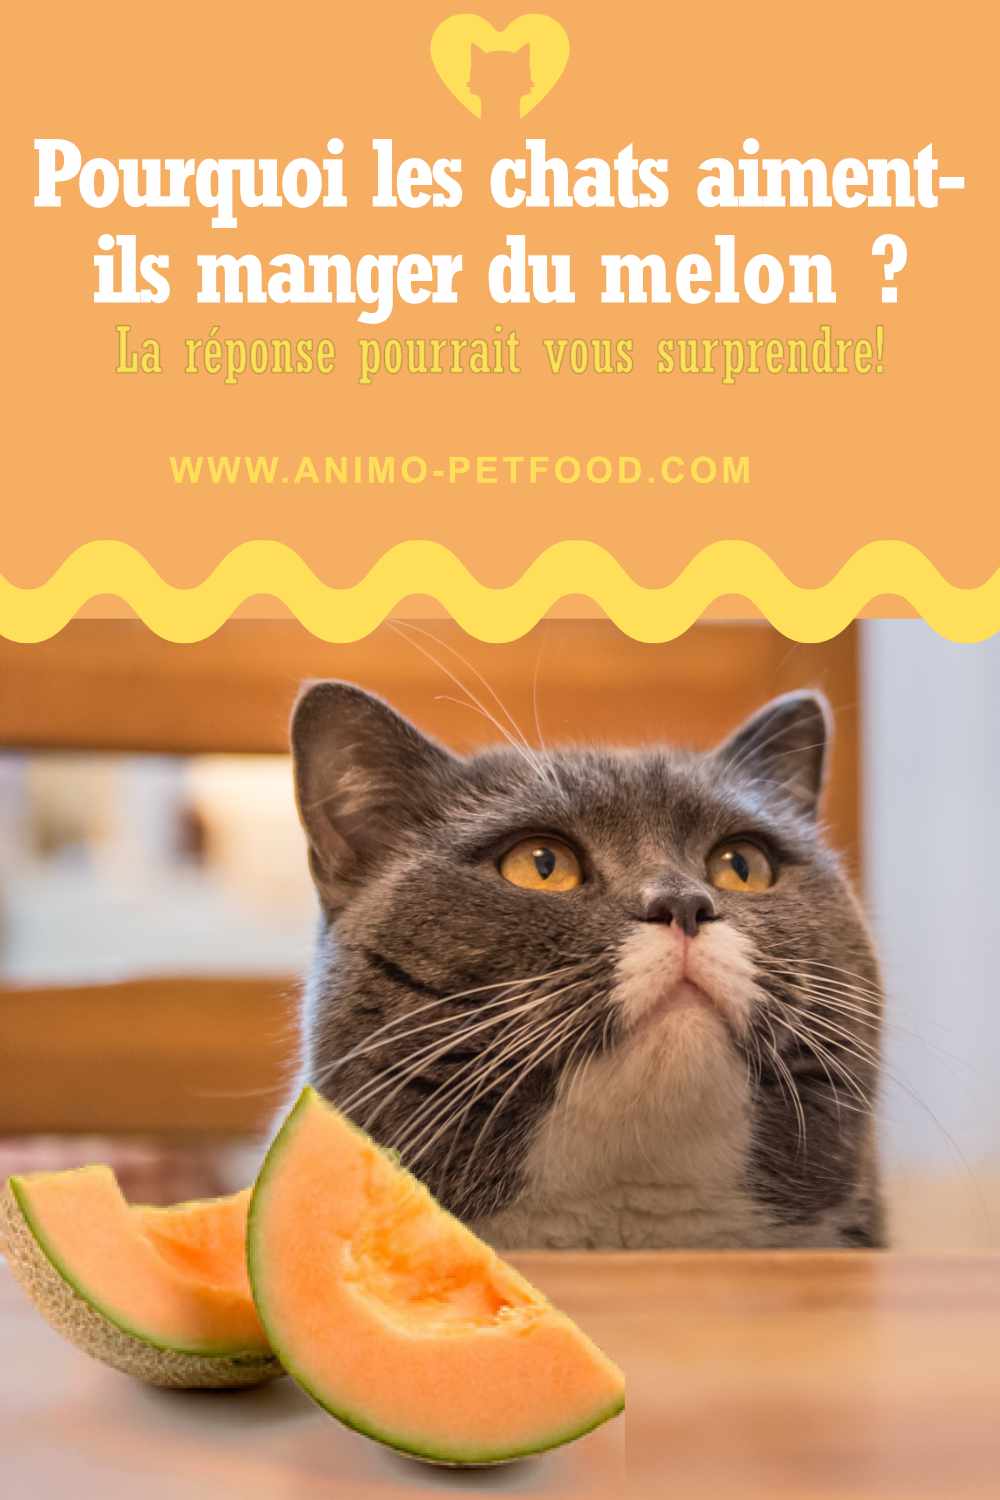 Pourquoi les chats aiment-ils manger du melon